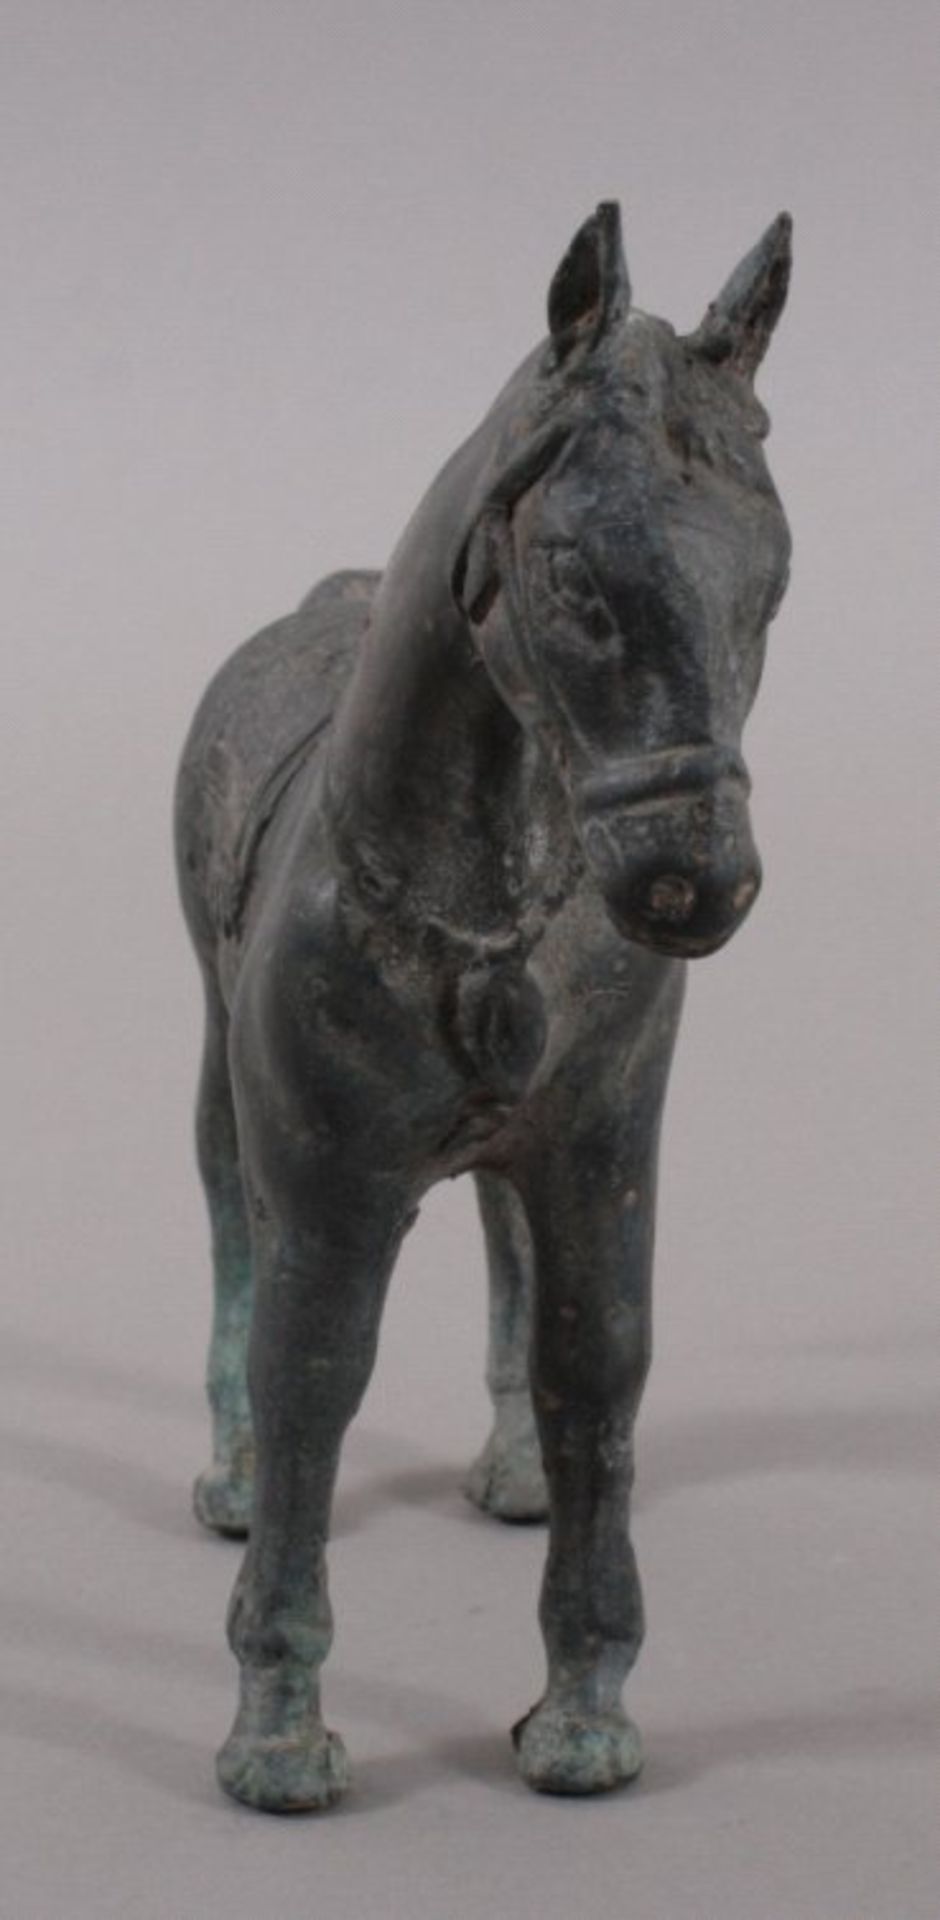 Pferde-Skulptur, Thailand 20. Jh.Bronzeskulptur, dunkel patiniert, ca. H-20, L-25 cm - Bild 2 aus 2